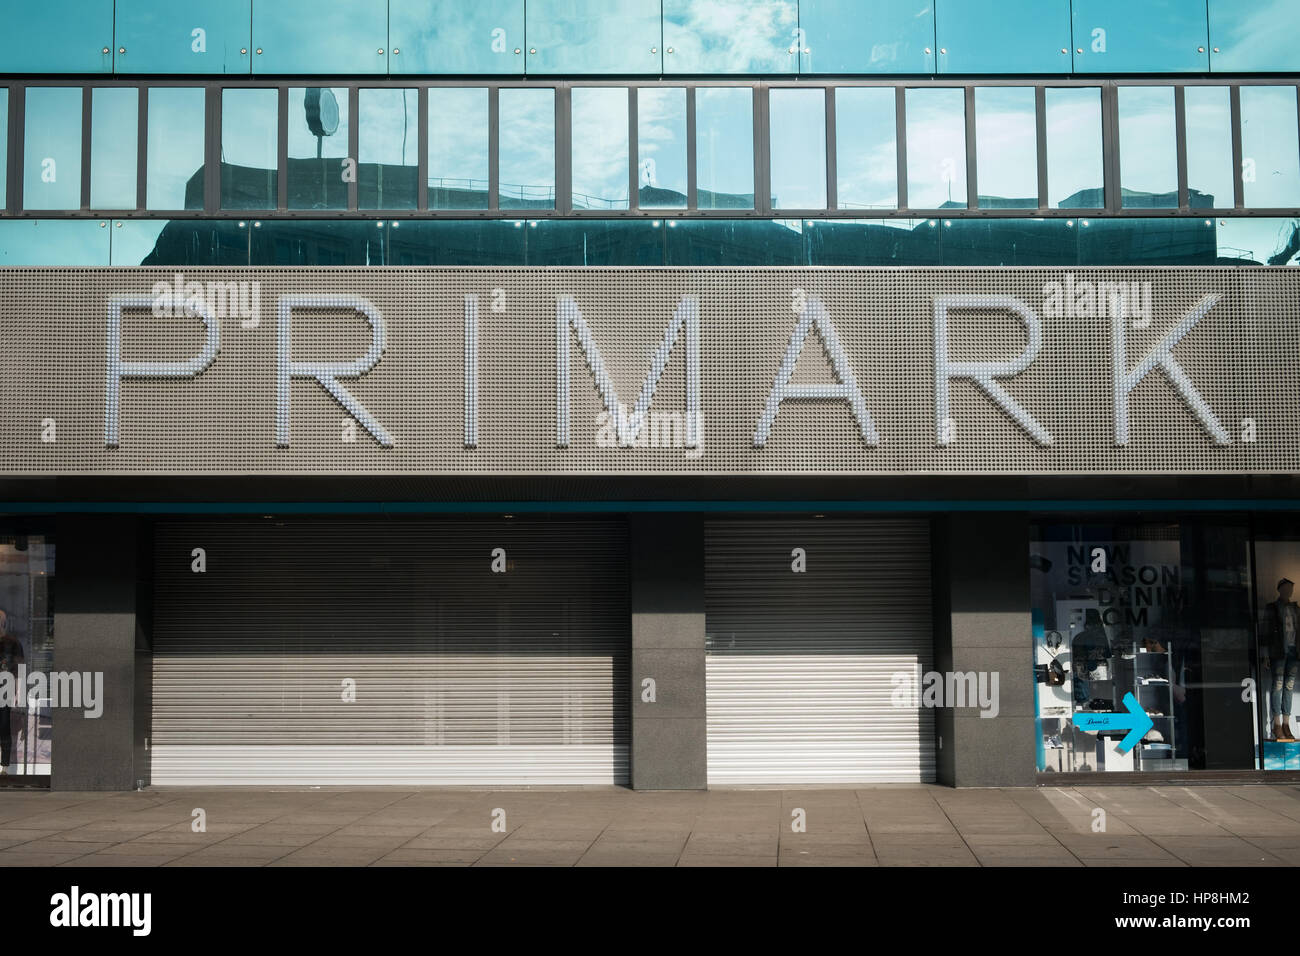 Berlin, Alemania - Febrero 19, 2017: La tienda cerrada frente a una tienda de Primark en Berlín. Primark es un centro internacional de comercio minorista de ropa. Foto de stock